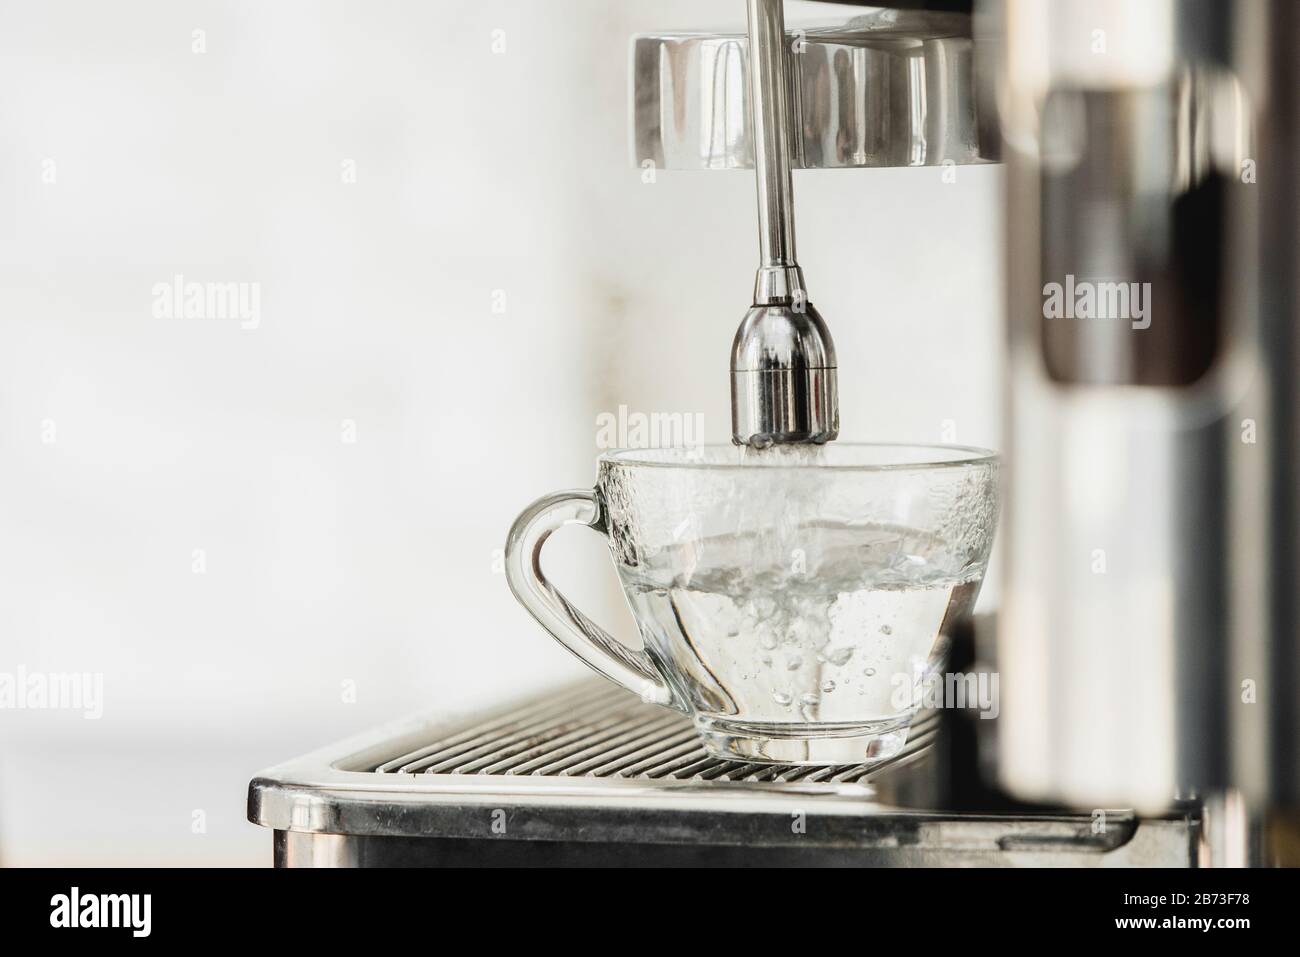 De l'eau chaude de la machine à café qui coule dans la tasse pour faire de l'Americano Banque D'Images